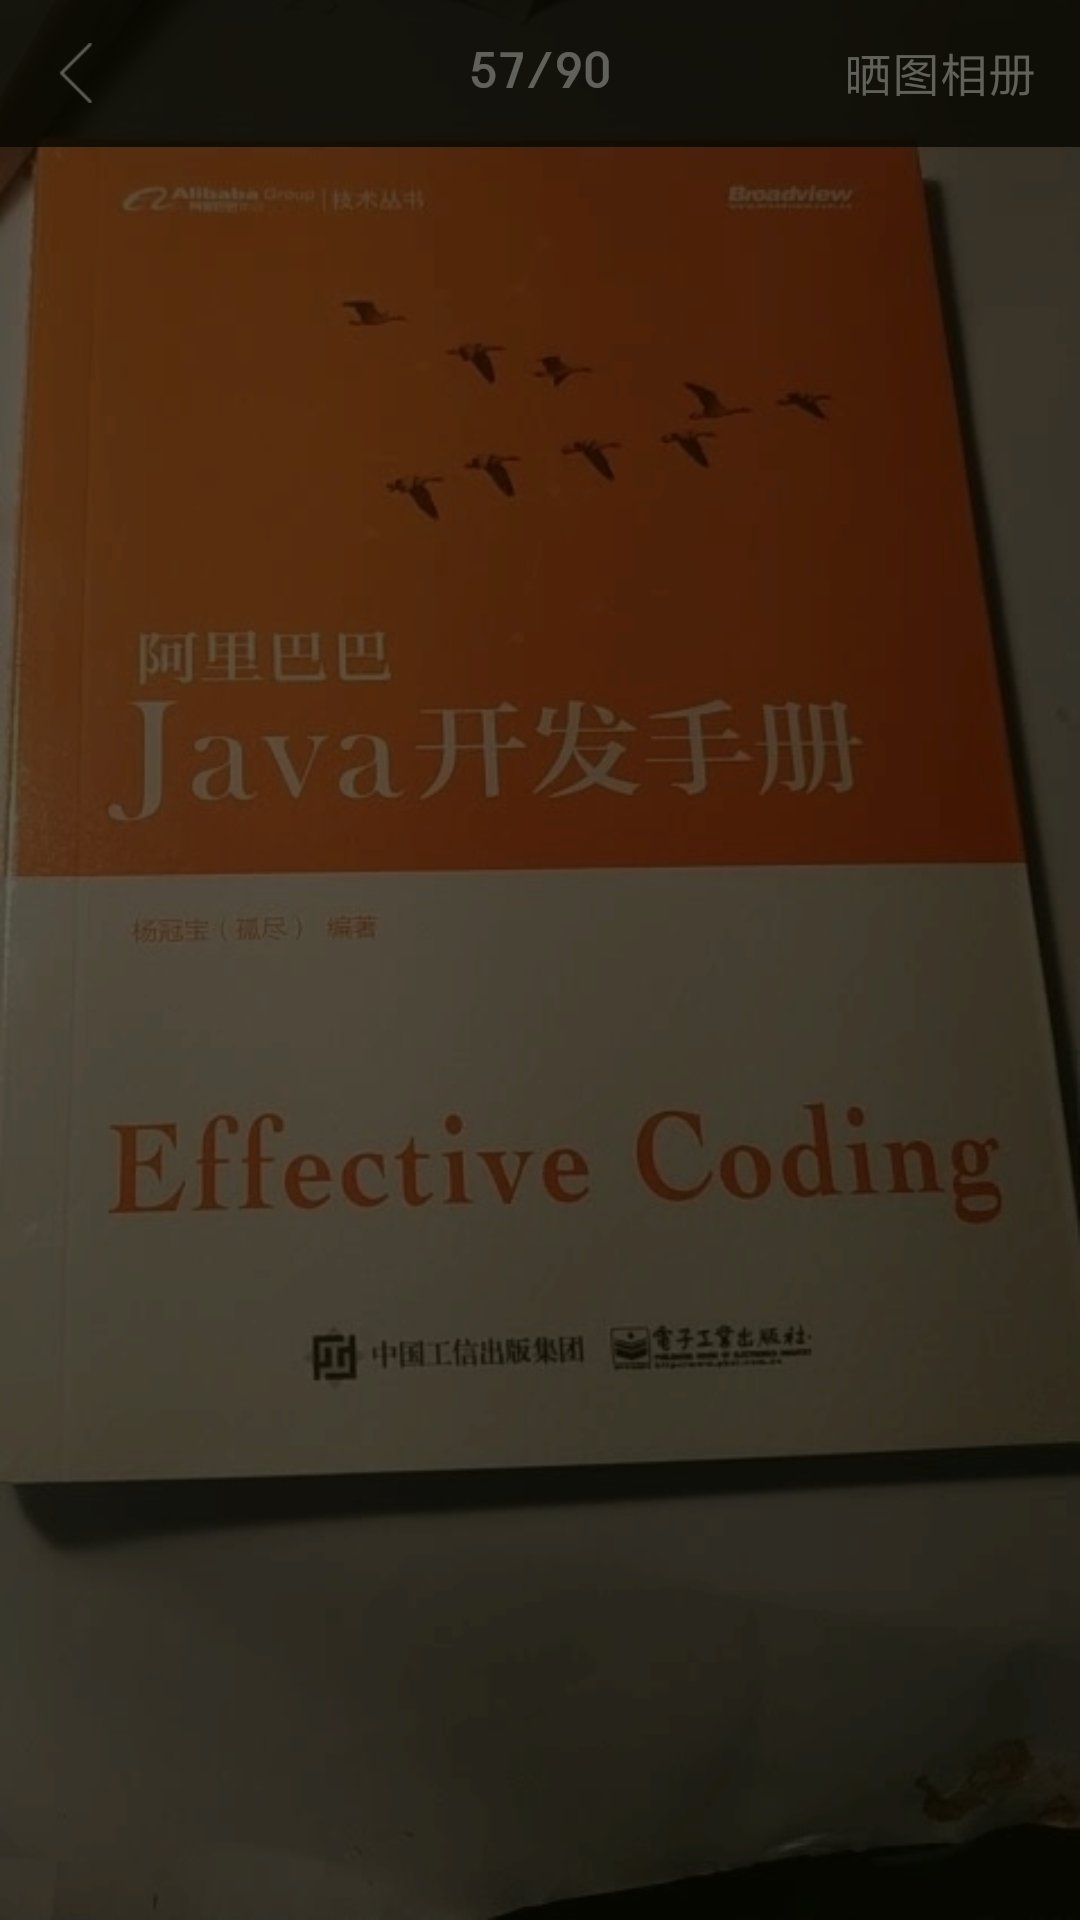 之前看到的各种编程规范和手册基本都是外国的公司和企业制定的，这次**推出 Java编码规范，作为中国码农，觉得还是很赞的。虽然规范的内容在 gayhub能找到，但还是特意买了一本，一方面有纪念意义，另一方面也方便翻阅，建议做 Java的同行们人手一本，也可以到 gayhub上看在线版。